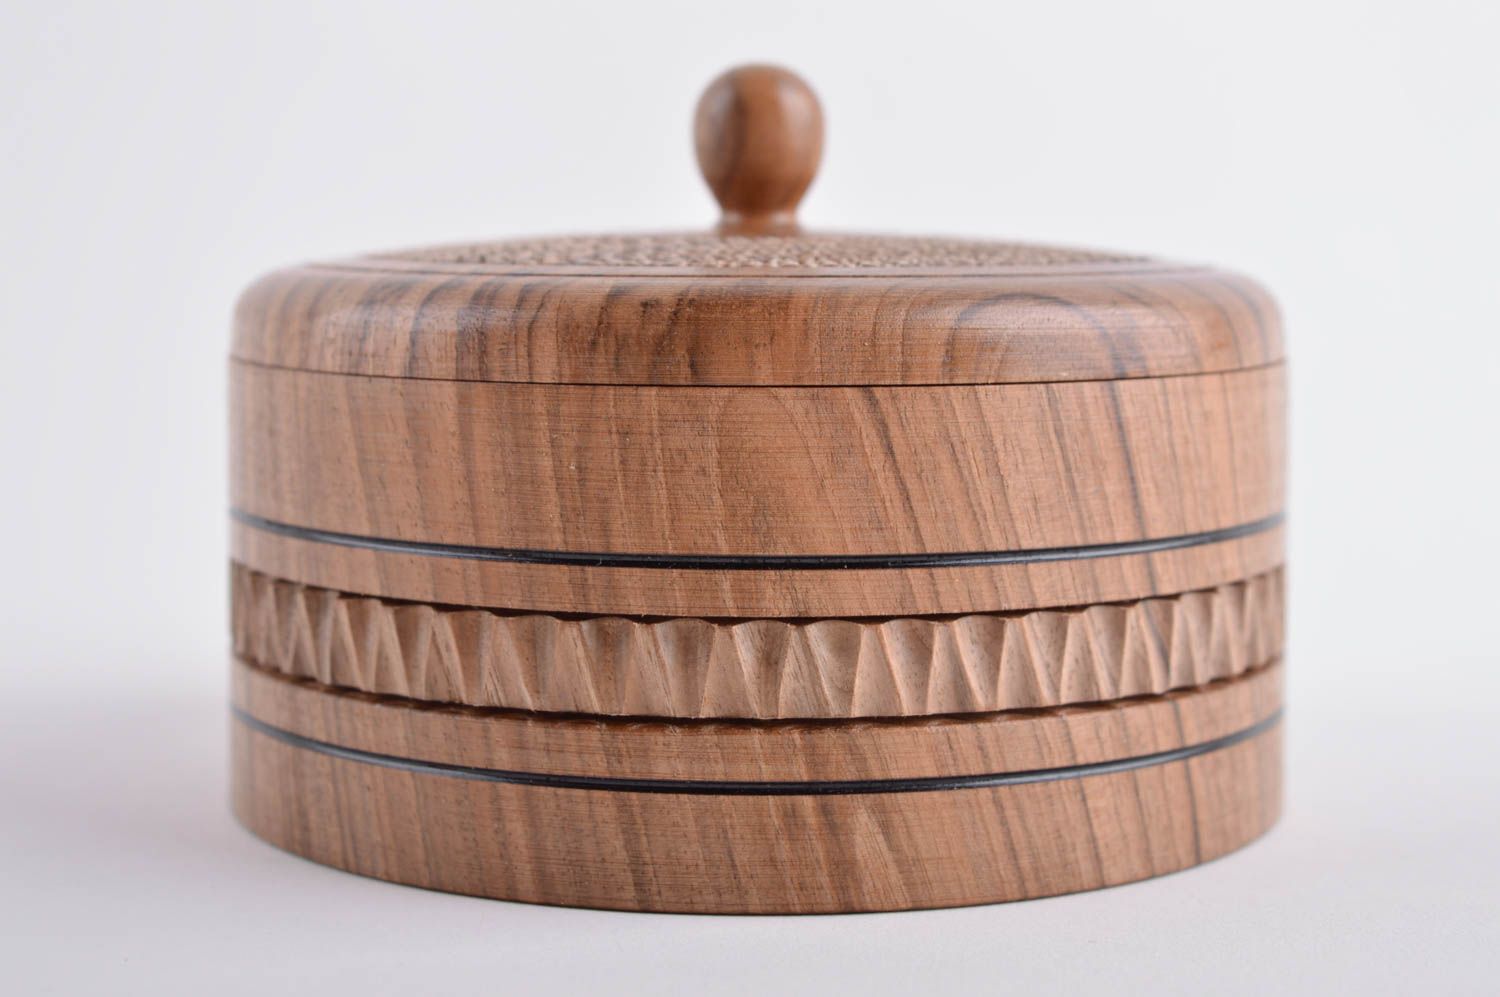 Beautiful handmade wooden box round jewelry box design gift ideas for girls photo 3